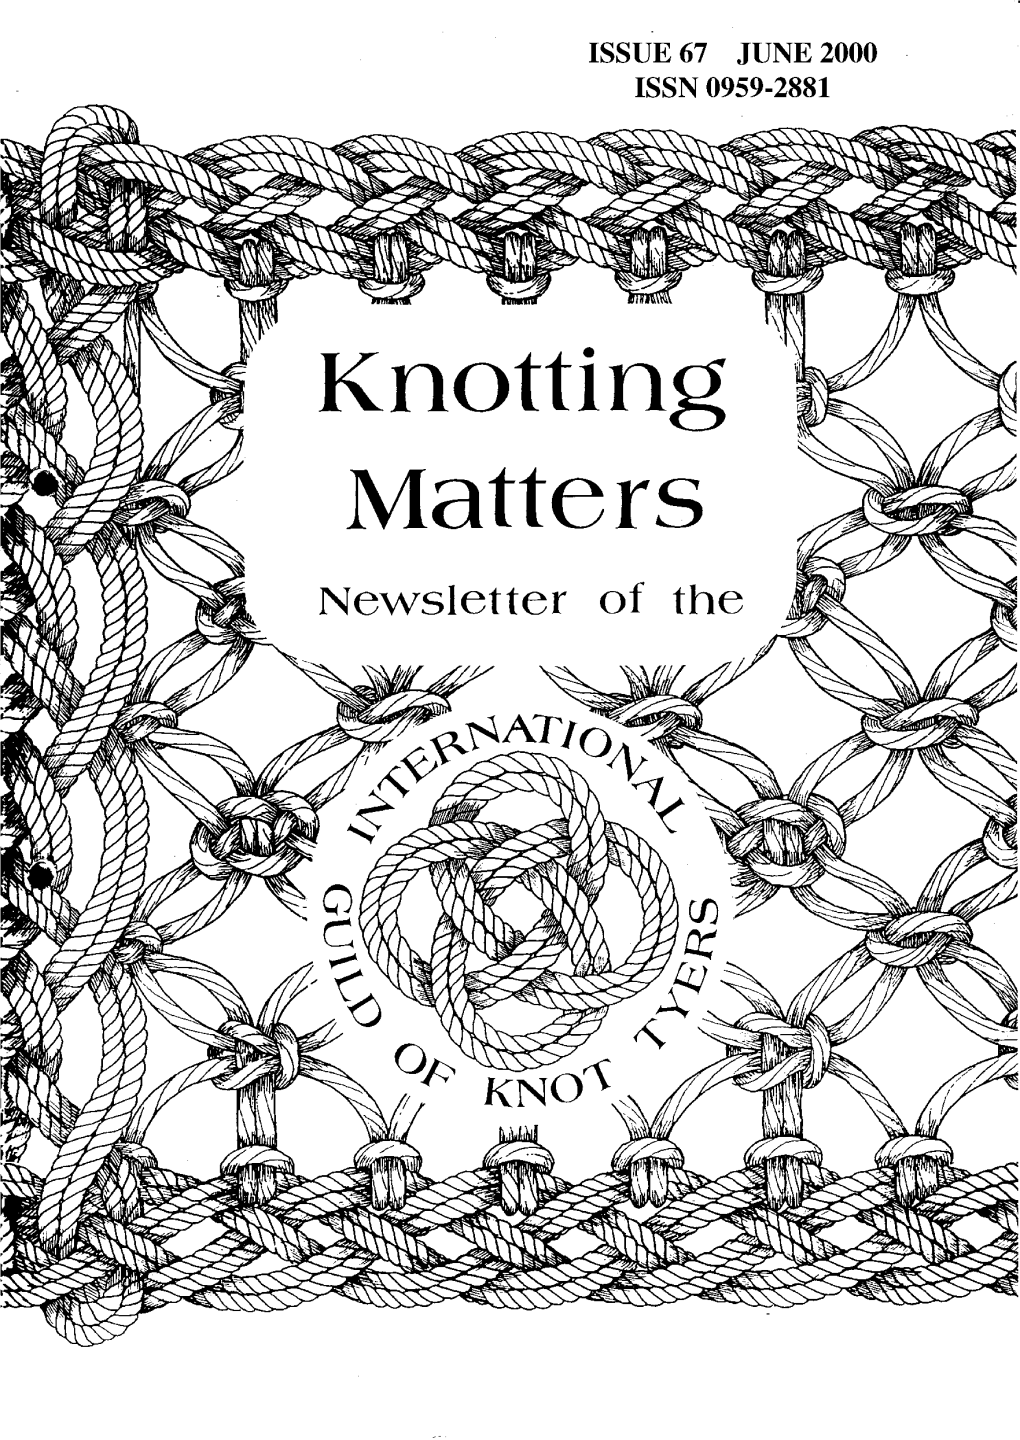 Knotting Matters 67